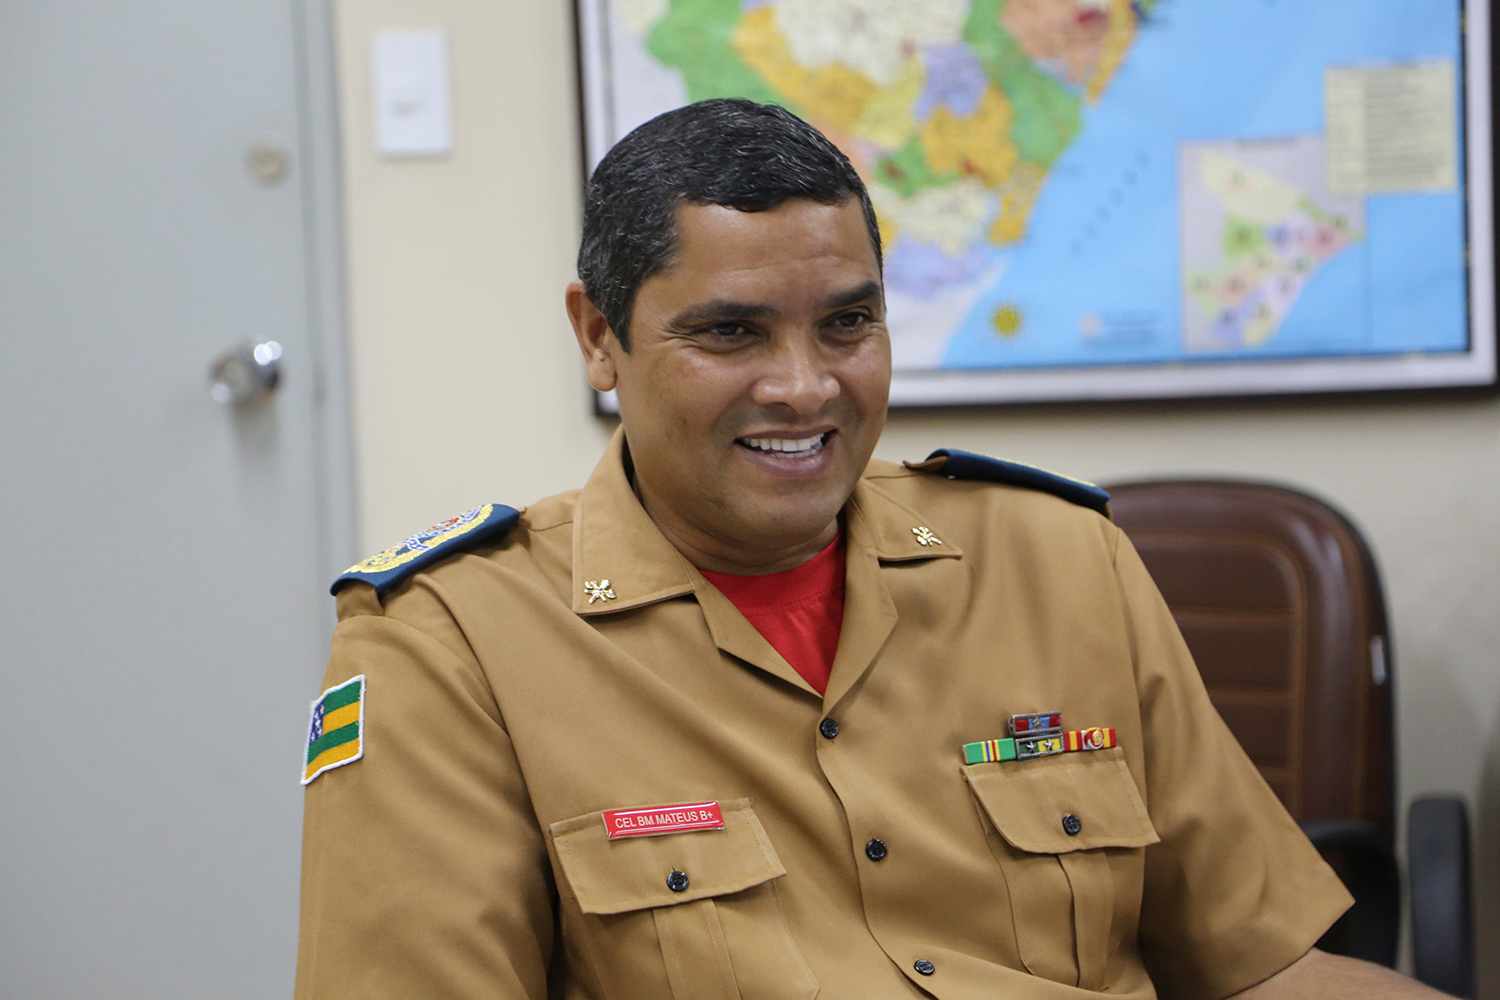 “A expectativa é que esse trabalho com a UFS seja permanente, com ganhos para as duas instituições”, disse o comandante-geral Gilfran Marceliocopete Santos Mateus